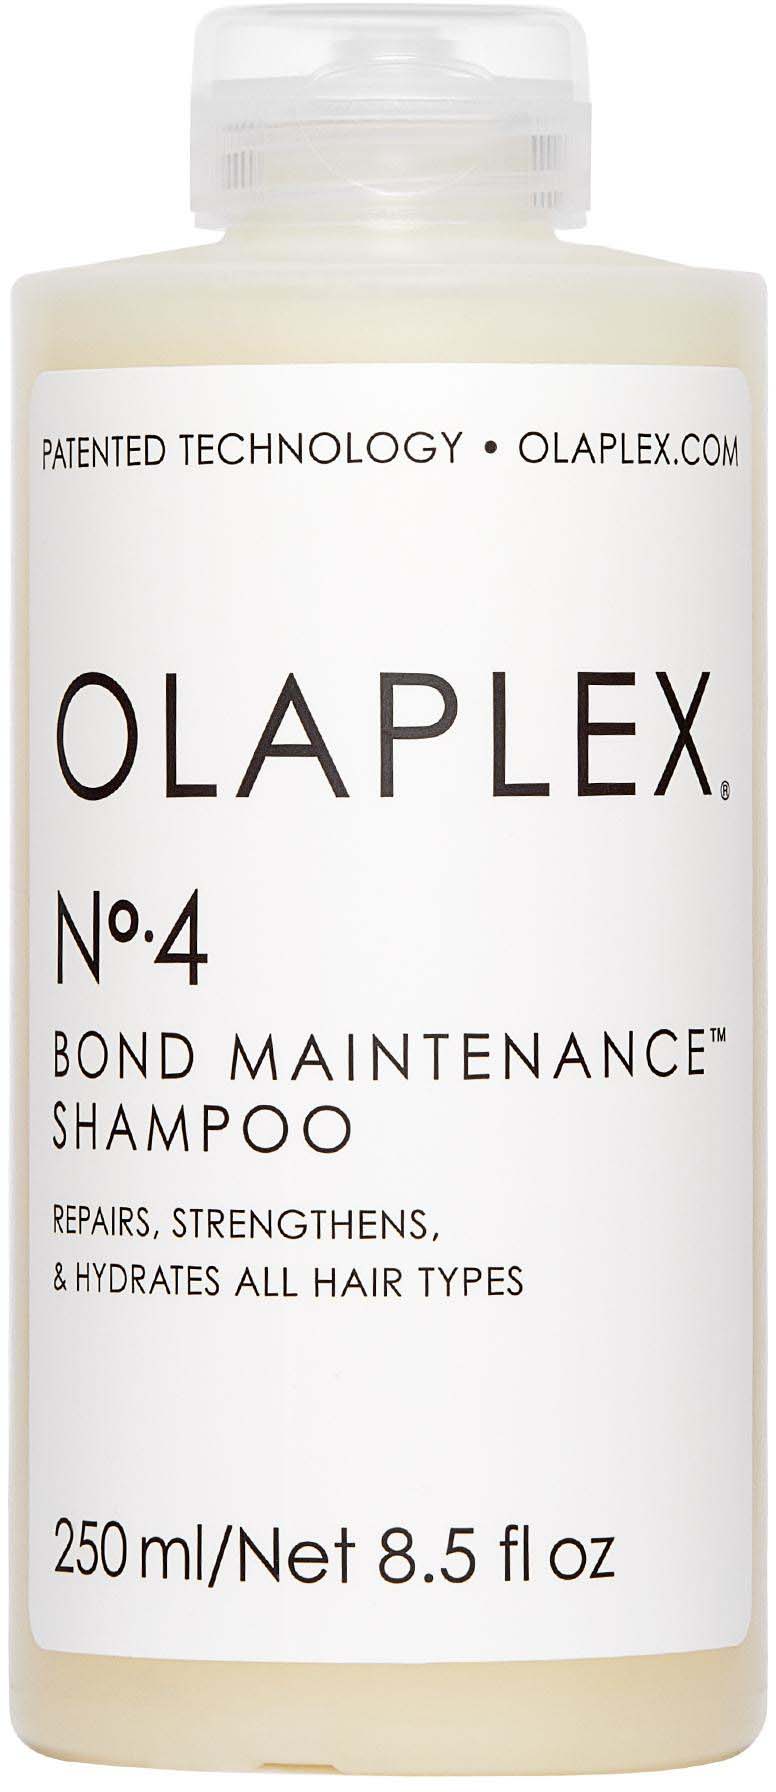 n. 4 bond maintenance shampoo